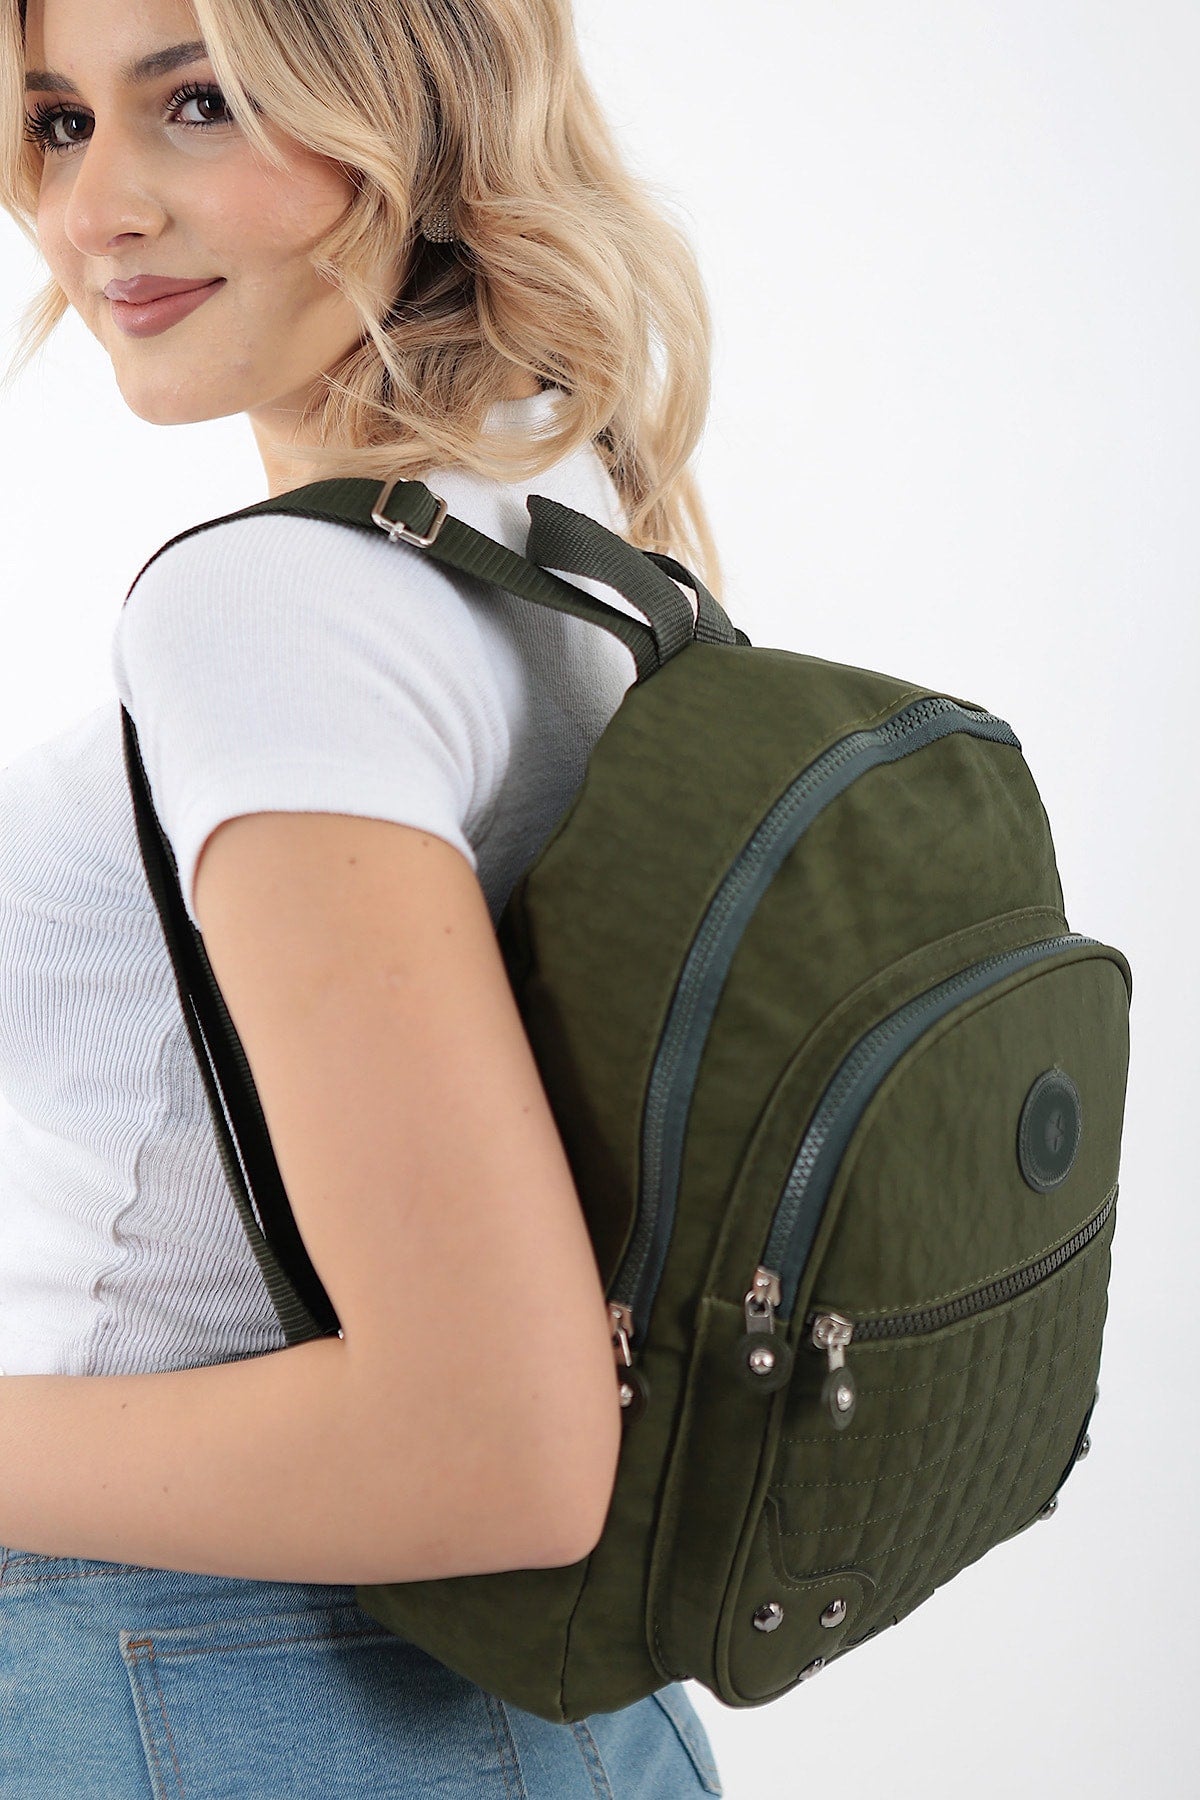 Unisex Green Crinkle Fabric Waterproof & Dirt-resistant Backpack And School Bag